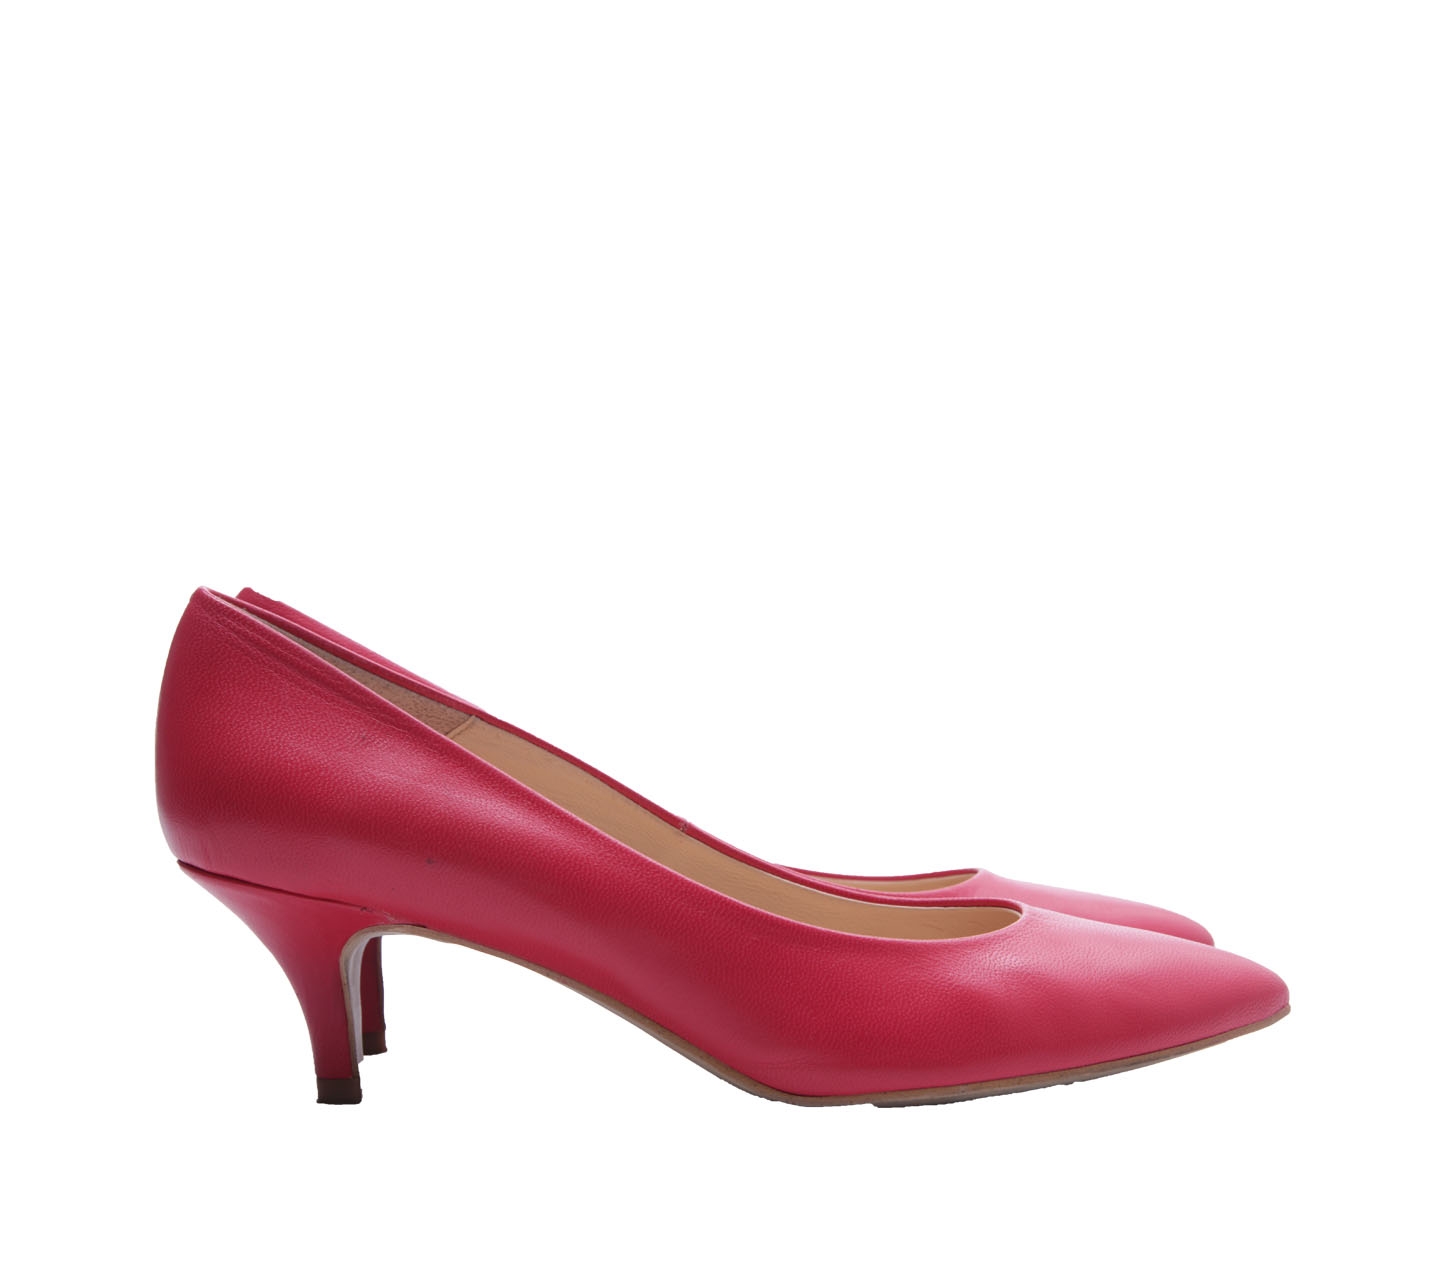 Mikaela Pink Coral Heels